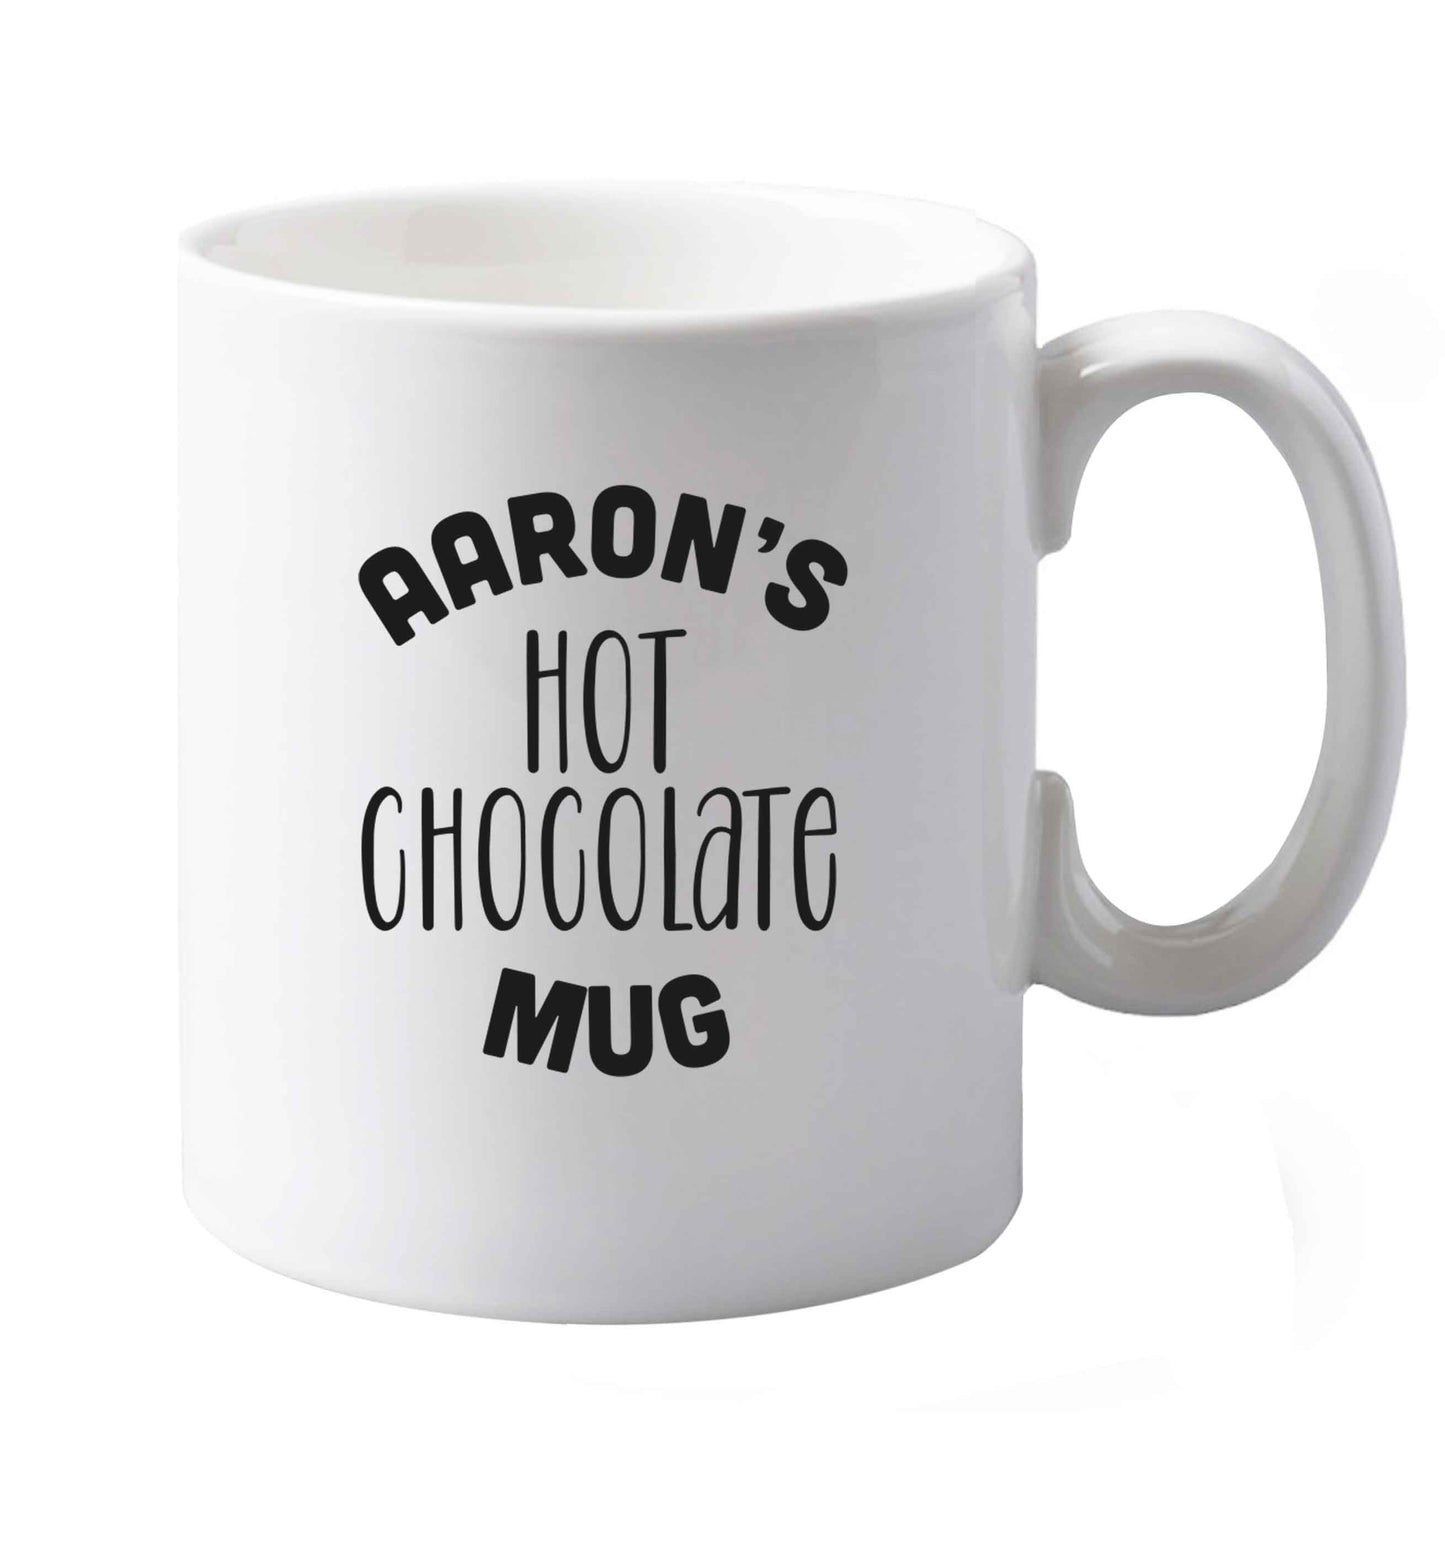 10 oz Personalised hot chocolate ceramic mug both sides